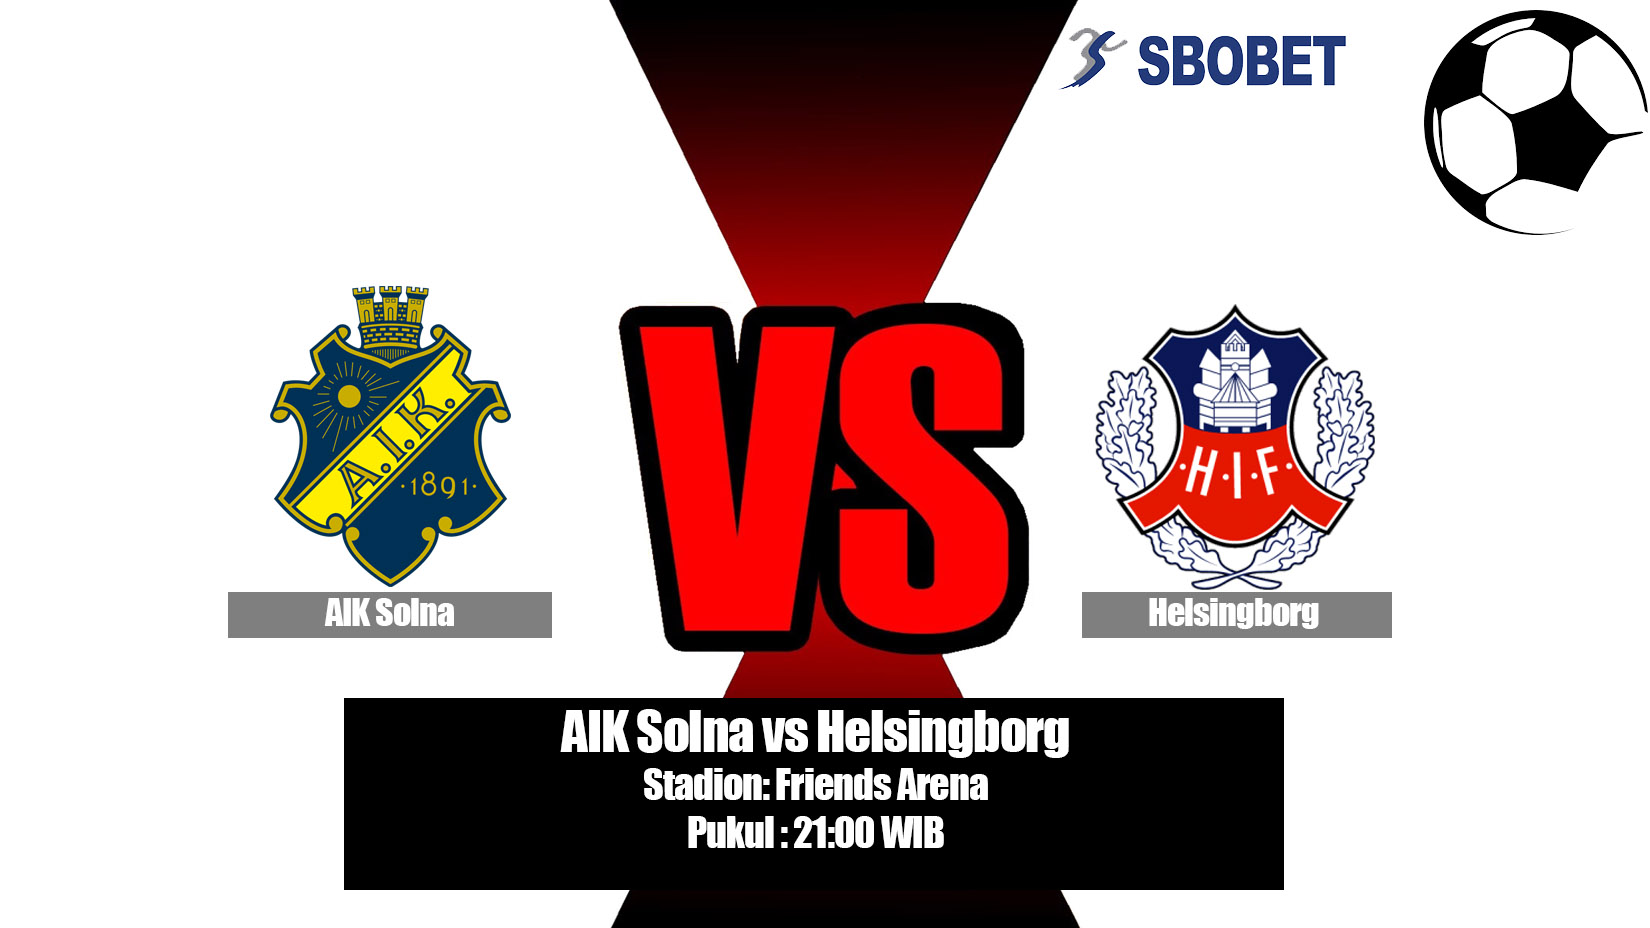 Prediksi Bola AIK Solna vs Helsingborg 20 Juli 2019